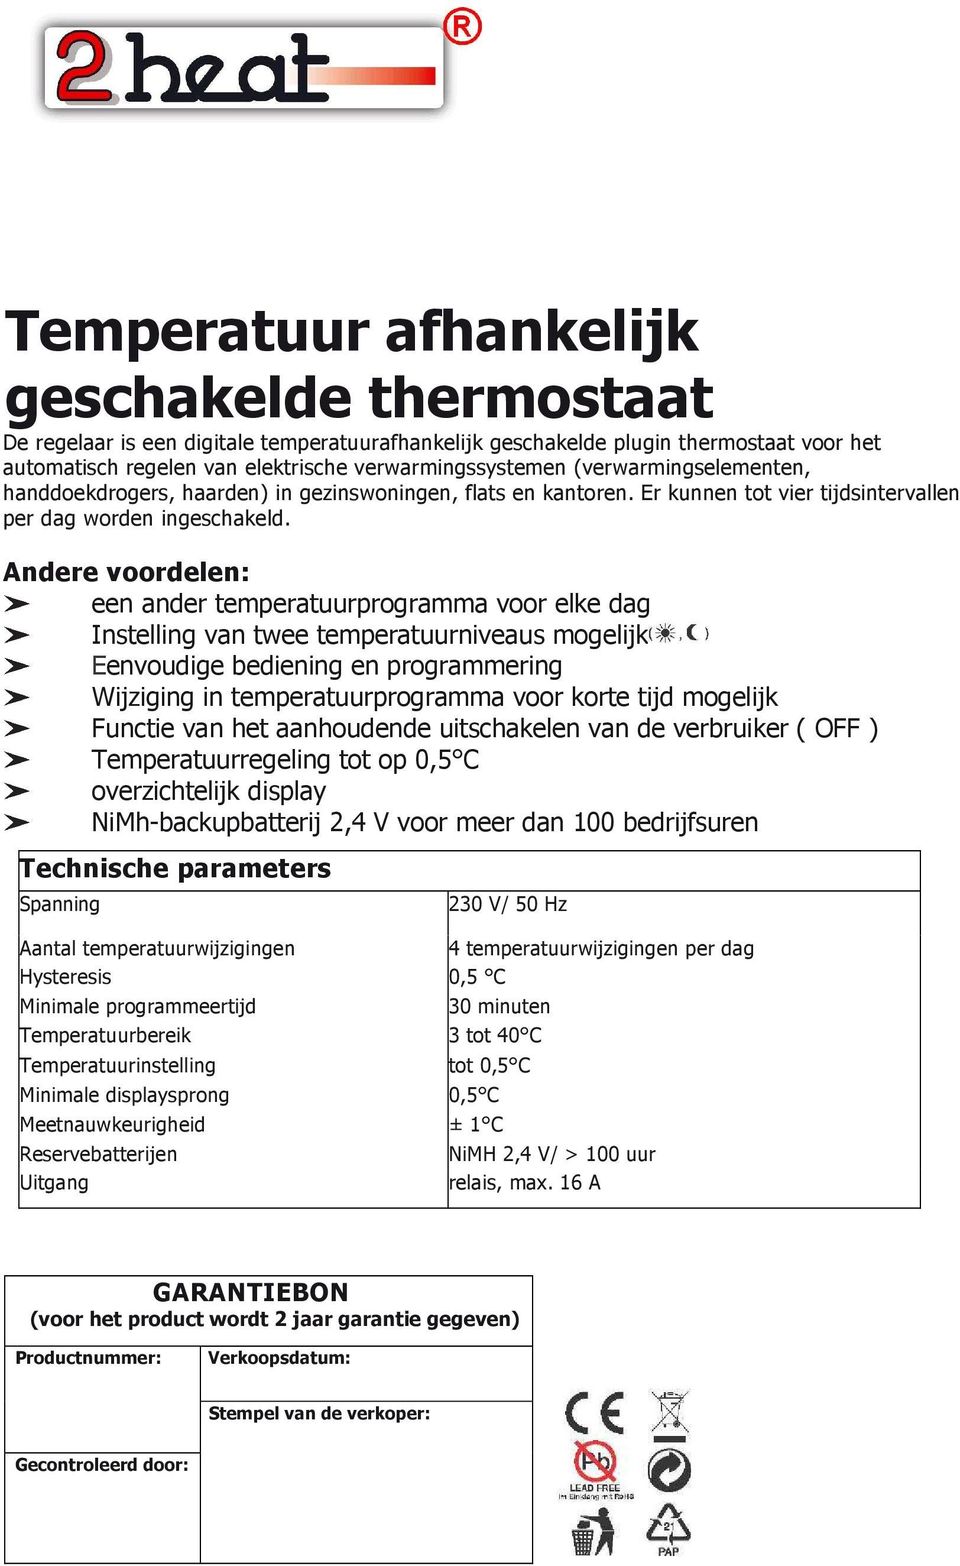 Andere voordelen: een ander temperatuurprogramma voor elke dag Instelling van twee temperatuurniveaus mogelijk Eenvoudige bediening en programmering Wijziging in temperatuurprogramma voor korte tijd